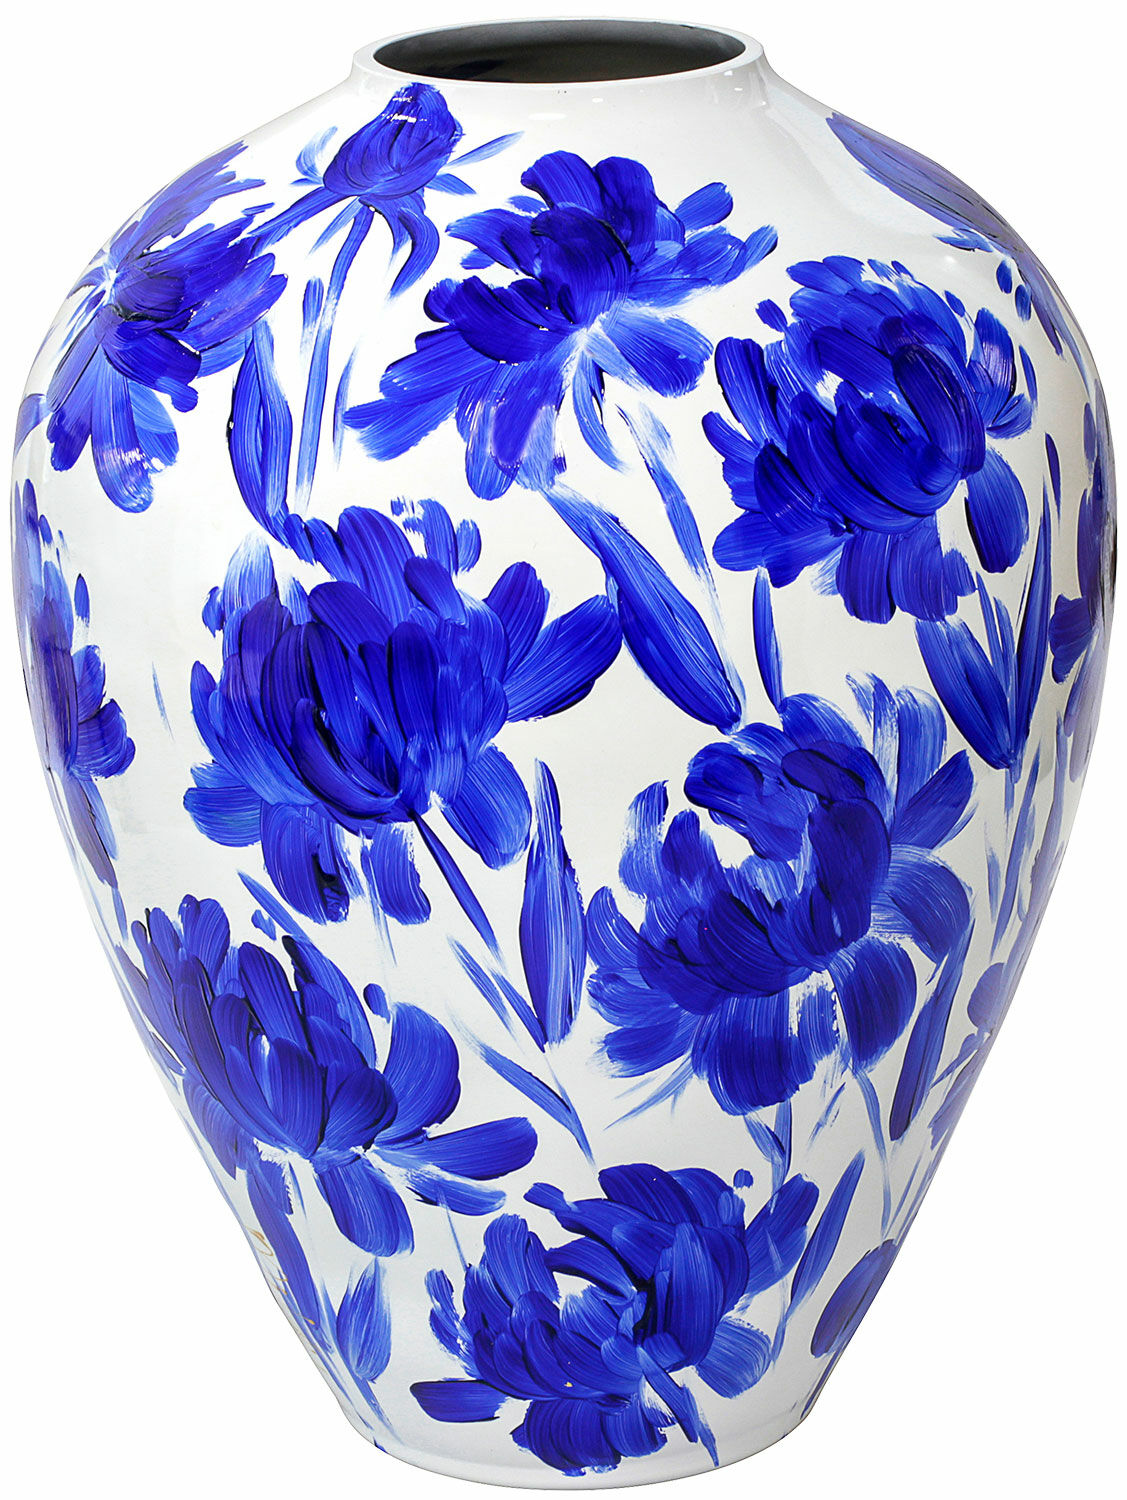 Vase en verre "Dahlia bleu" von Milou van Schaik Martinet